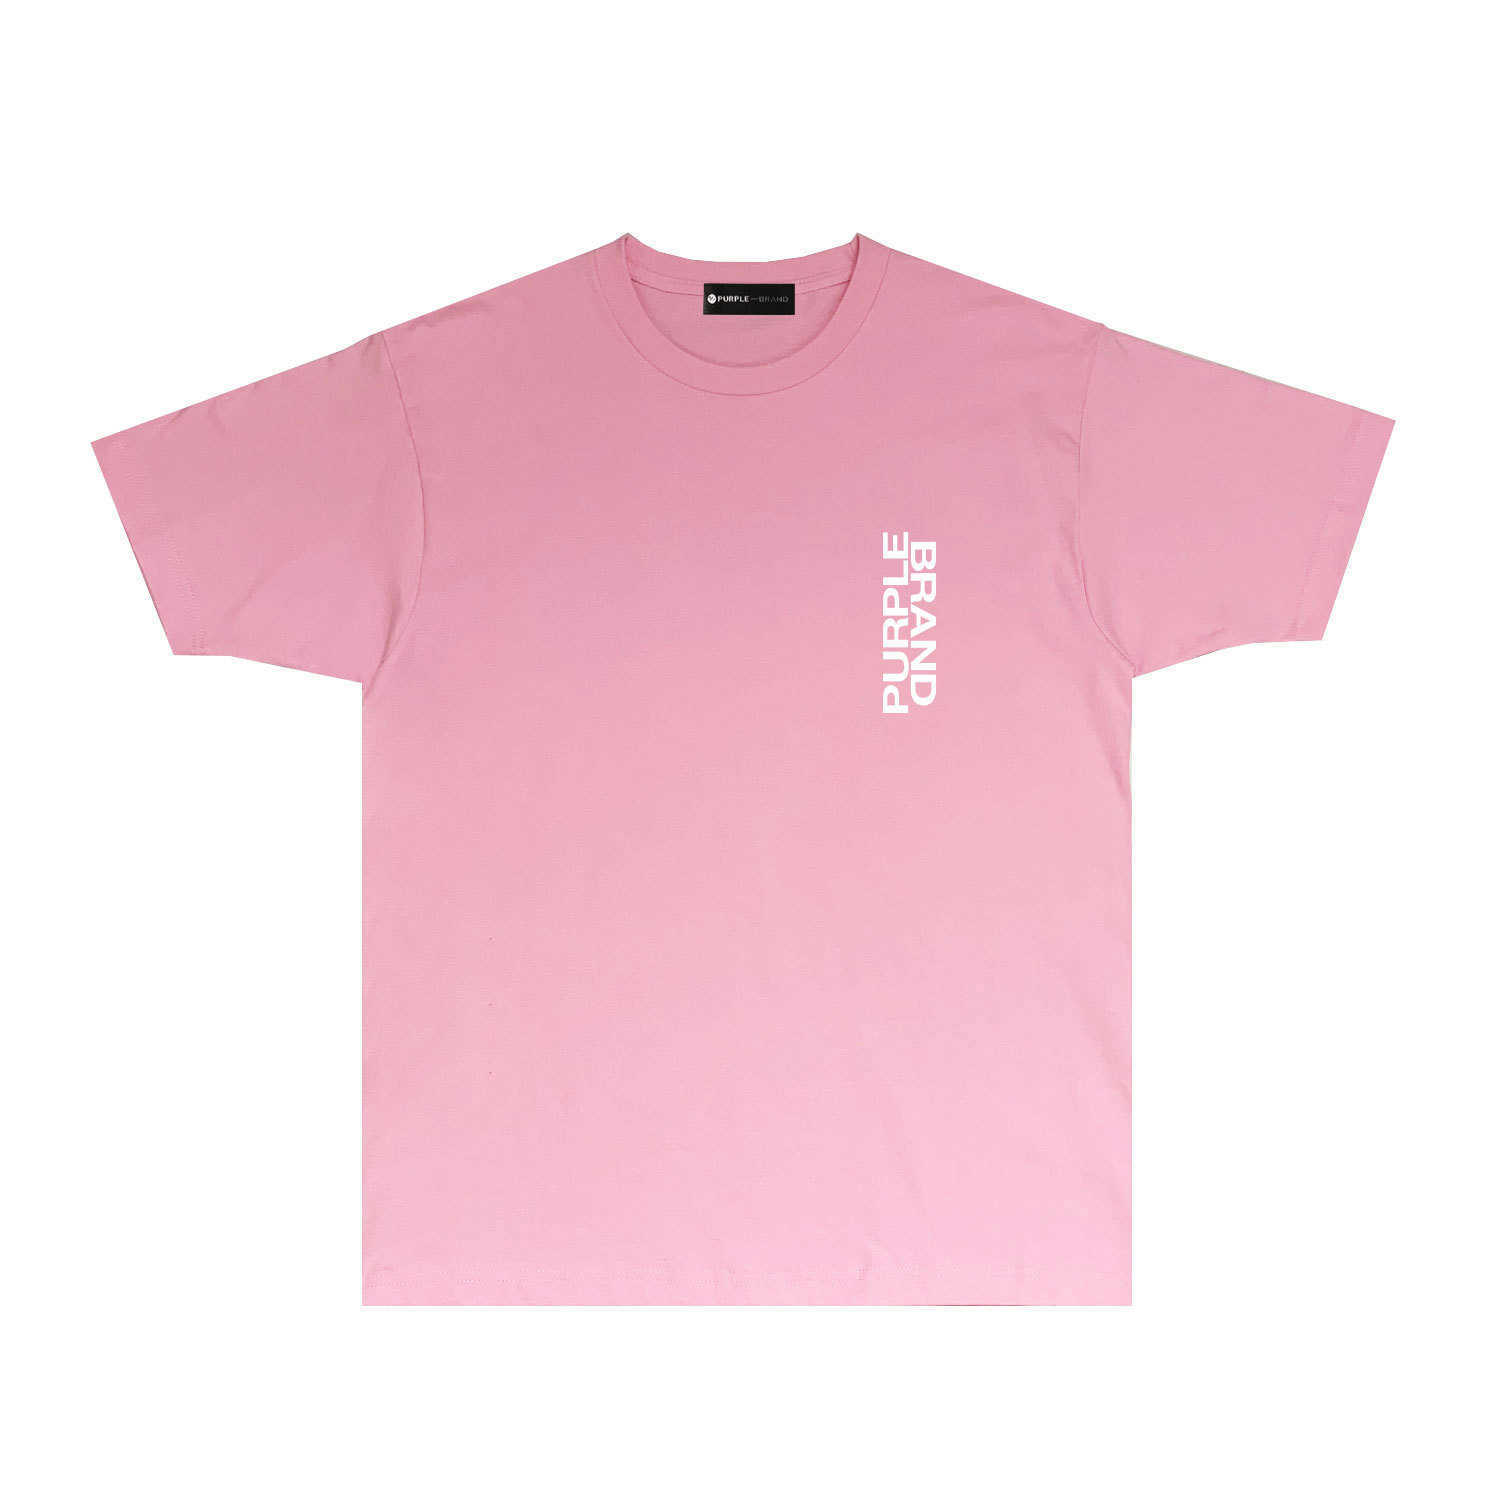 Långsiktigt trendigt varumärke lila märke t-shirt kort ärm t-shirt shirtarc0